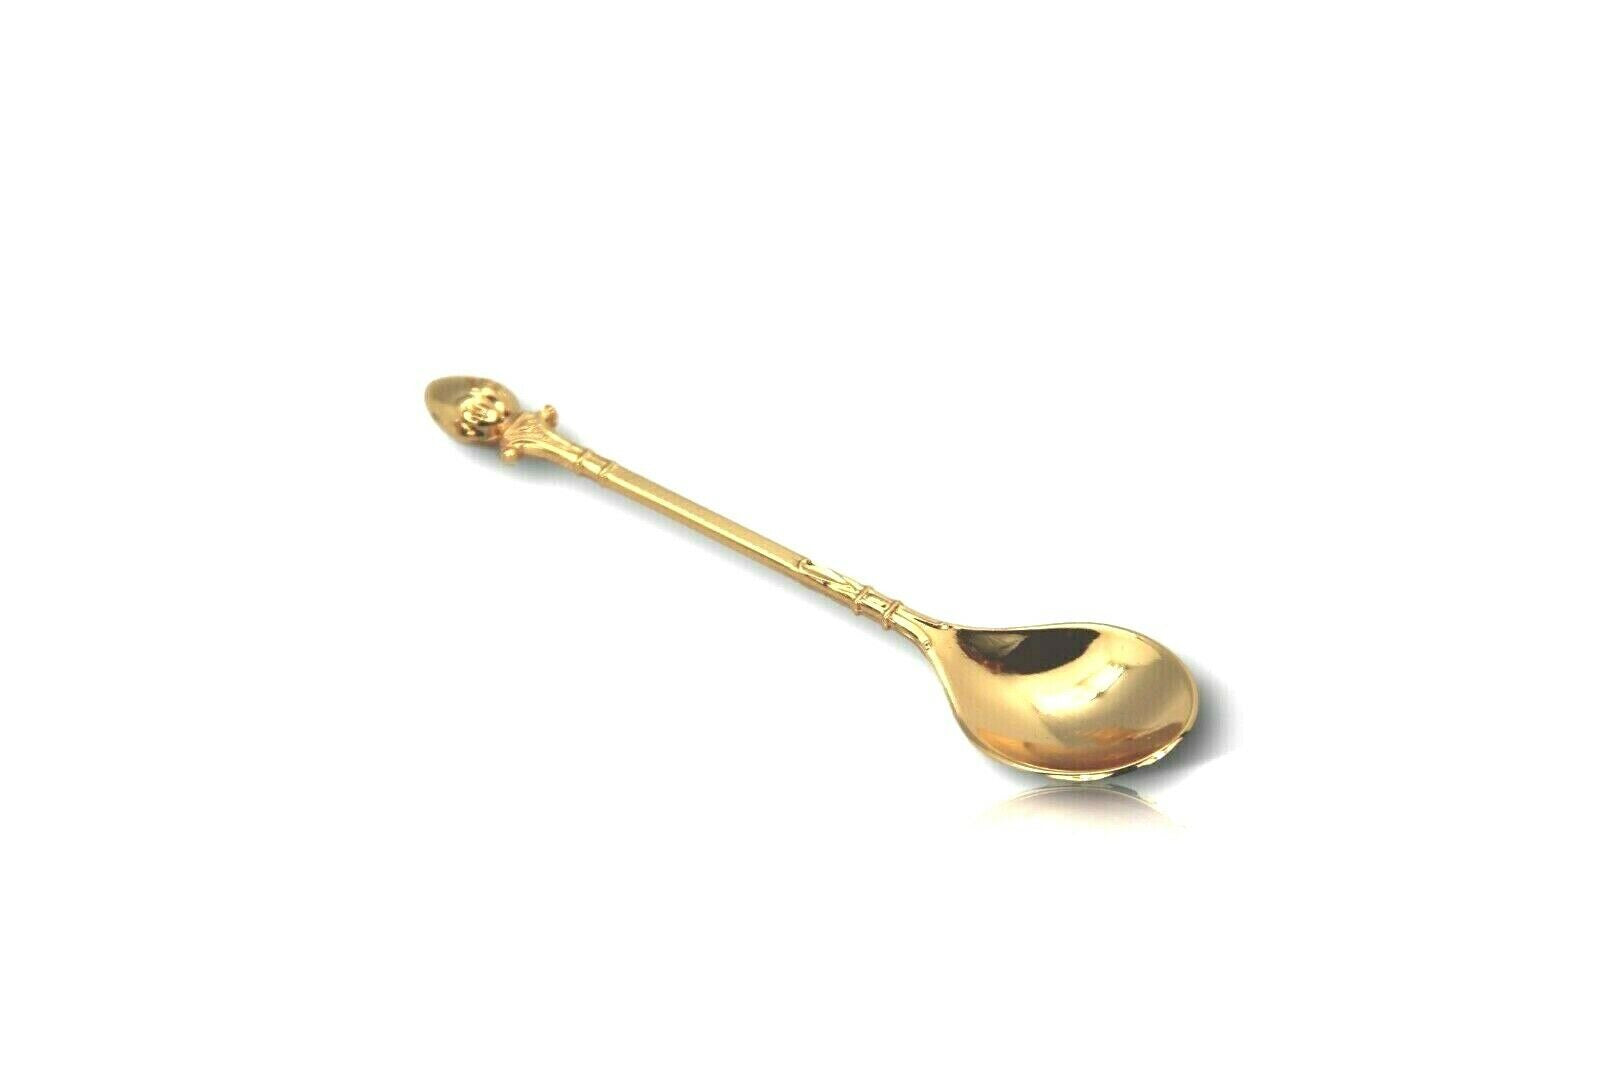 Spoon holder golden